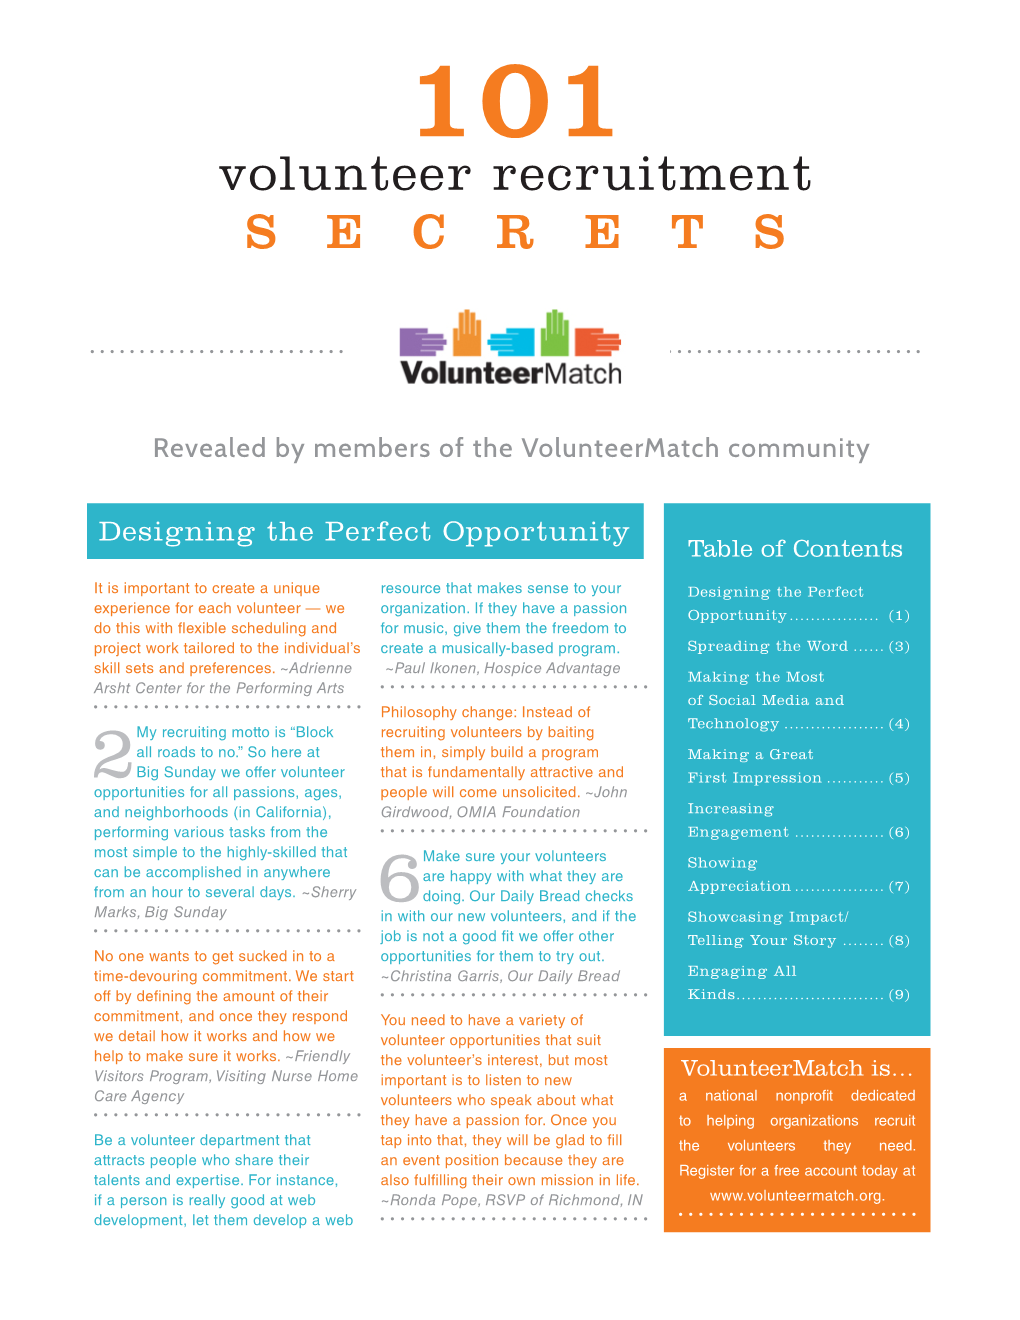 101 Volunteer Recruitment Secrets from Volunteermatch